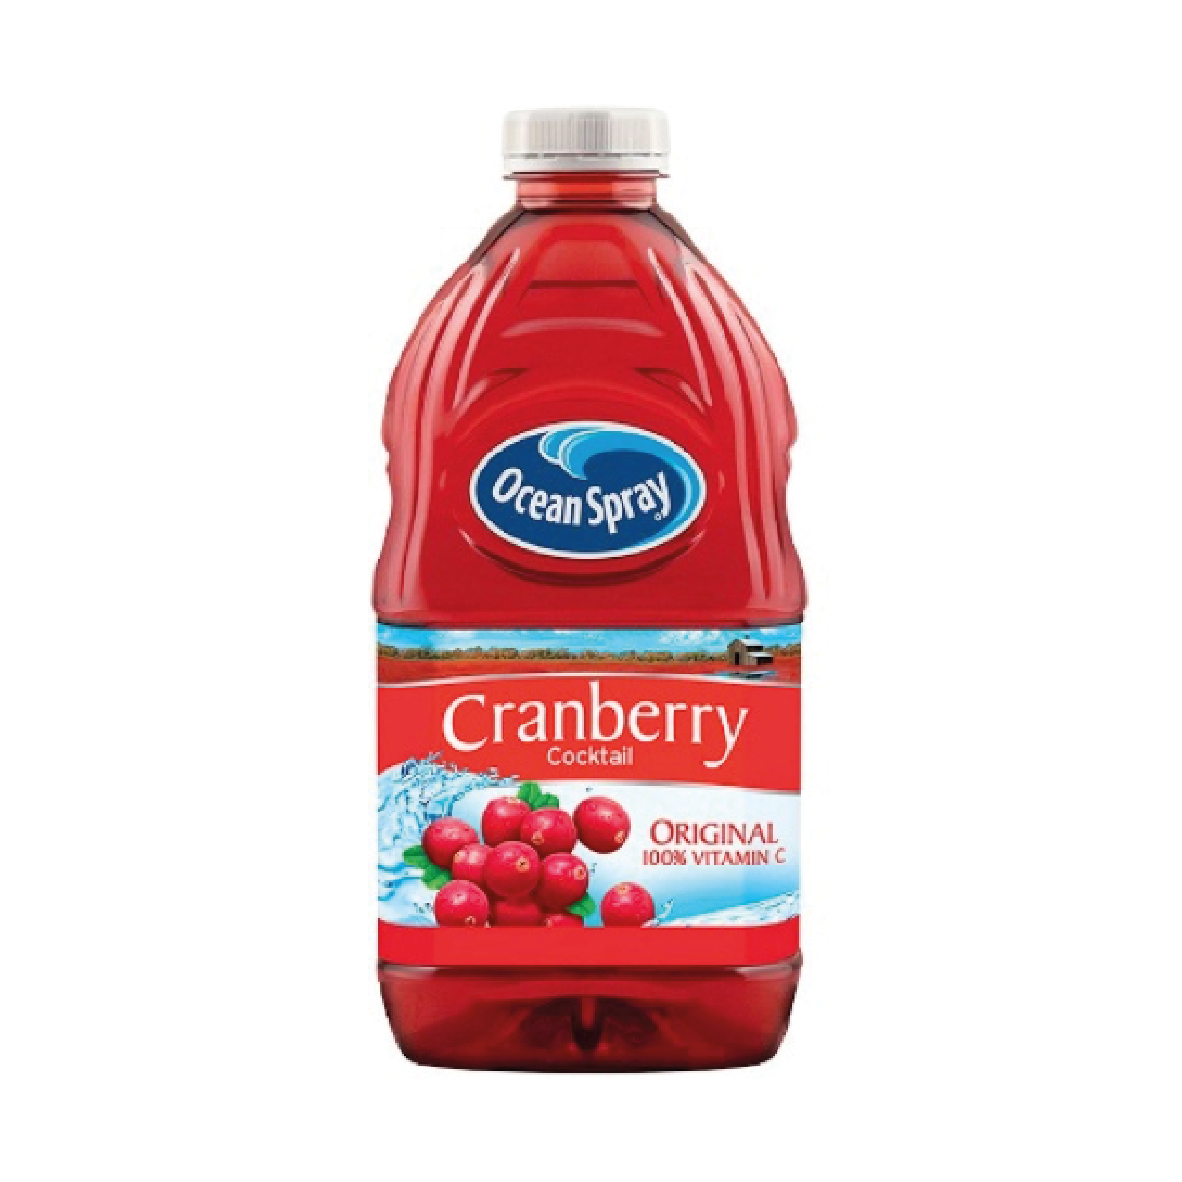 Cocktail de cranberry em spray oceano 1,89L